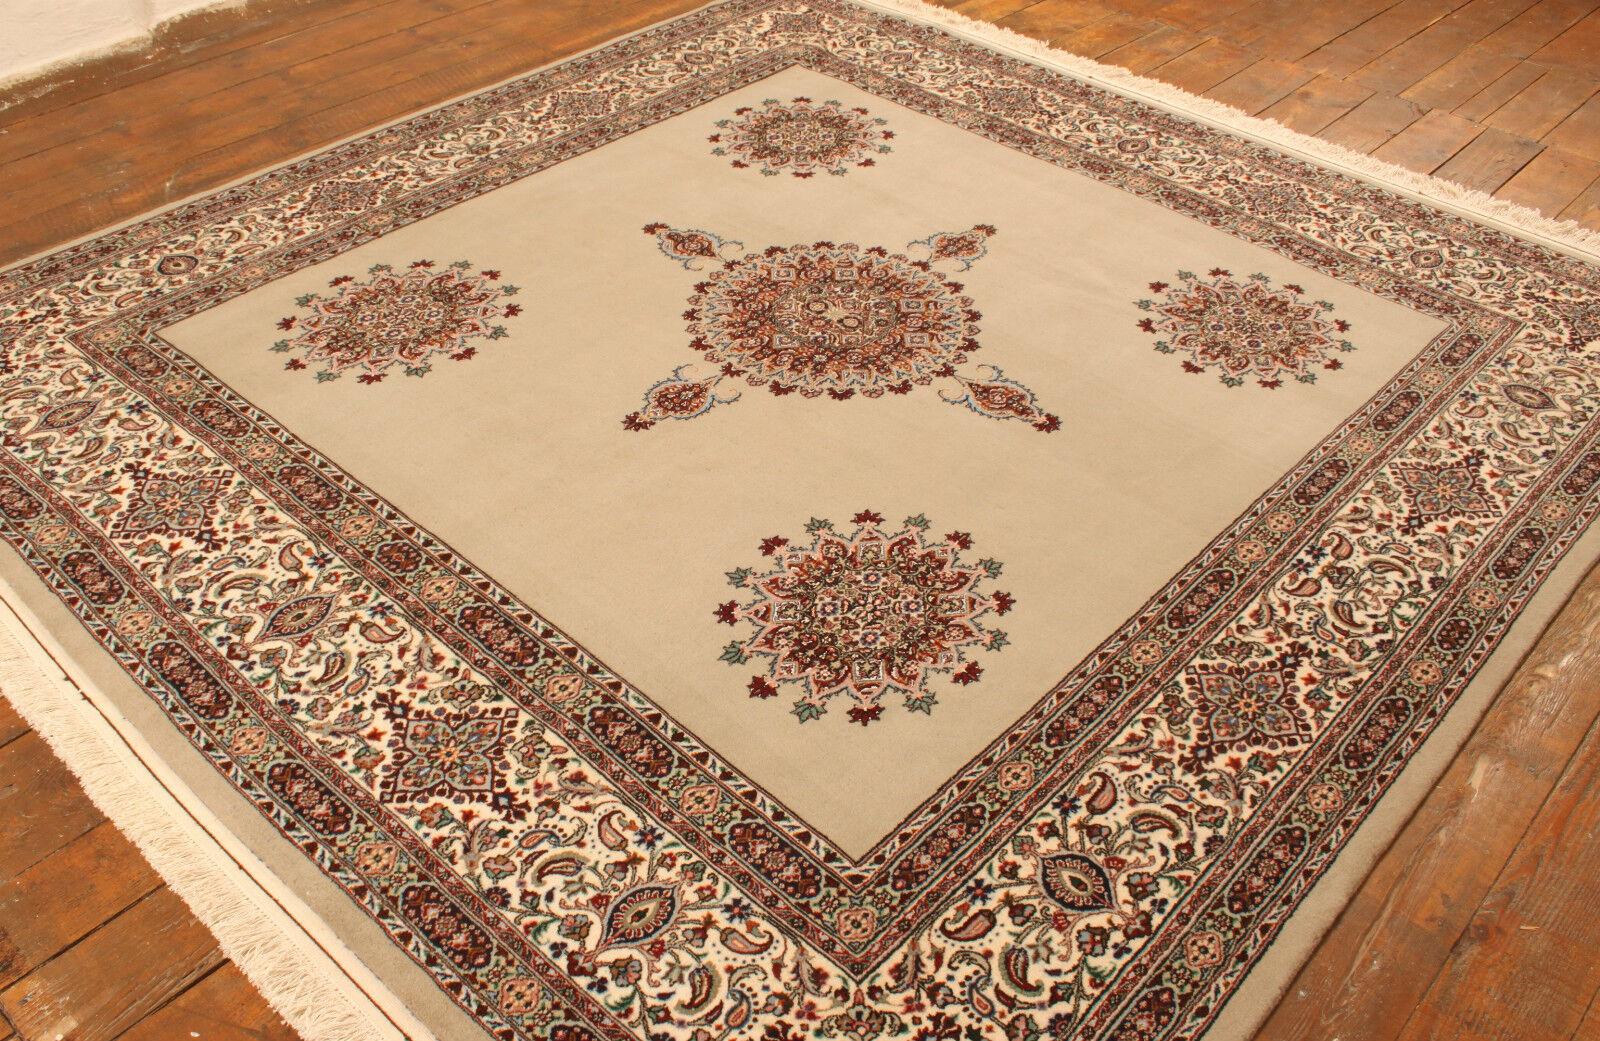 Tapis Vintage Persan Isfahan avec Soie (8.1' x 8.7' / 247cm x 267cm)

Laissez-vous séduire par l'artisanat exquis de notre tapis Isfahan vintage de style persan fait à la main avec de la soie. Fabriqué dans les années 1990, ce luxueux tapis mesure